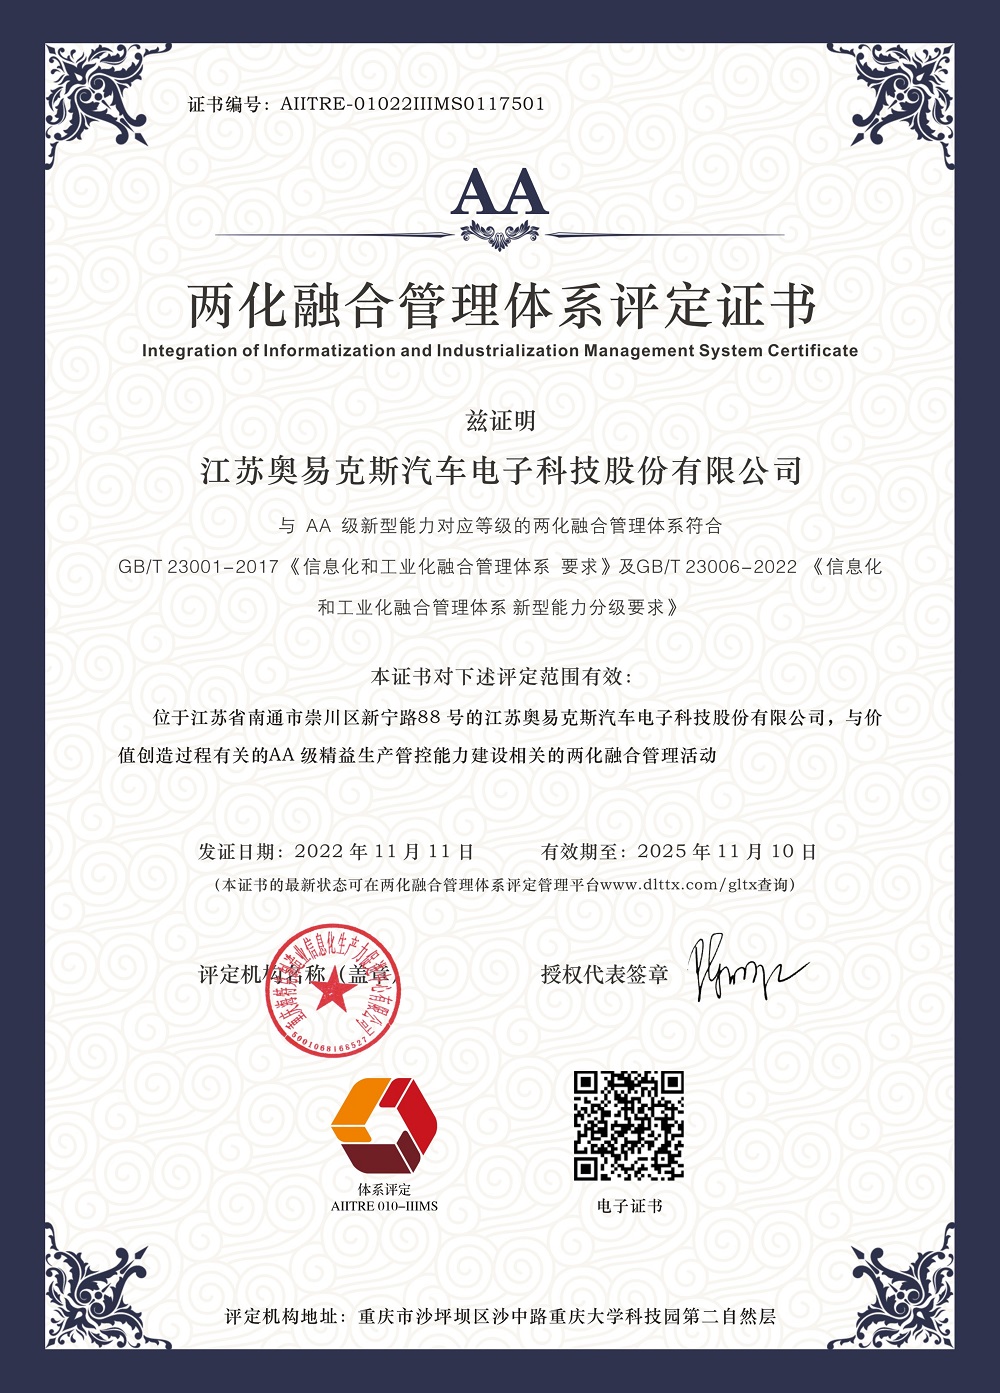 江苏奥易克斯-2022年两化融合管理体系认证